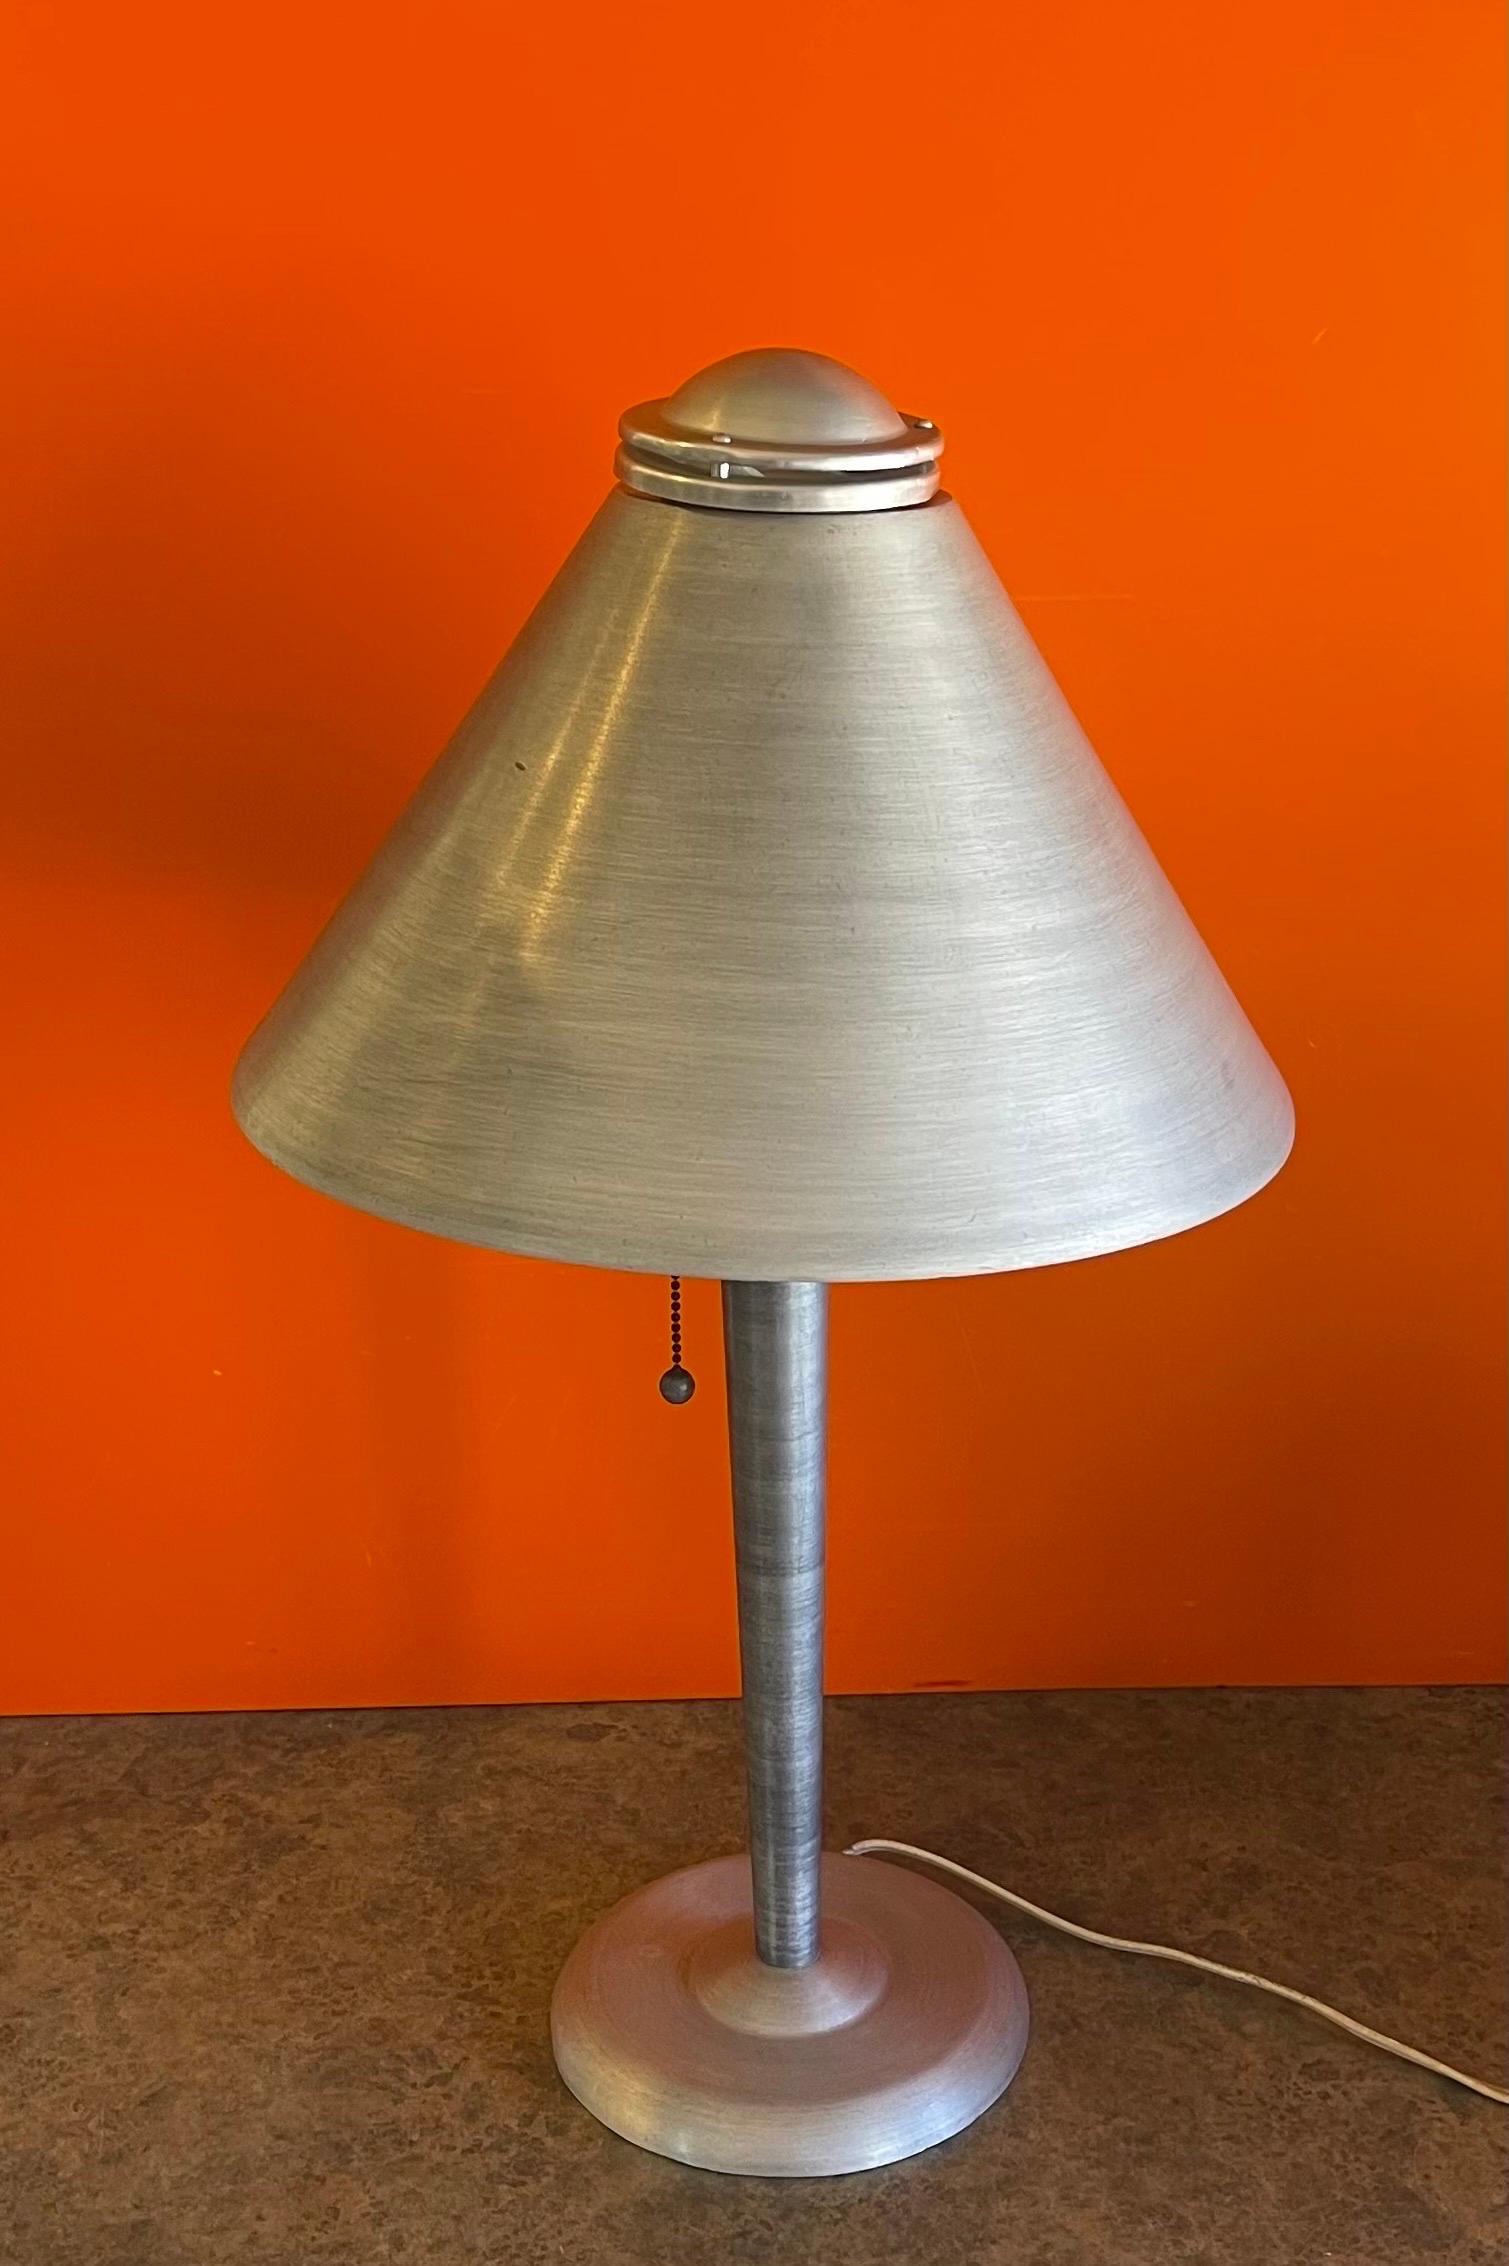 Très belle lampe de table art déco / Machine Age Corporation en aluminium brossé, circa 1930. La lampe est en bon état et mesure 14 